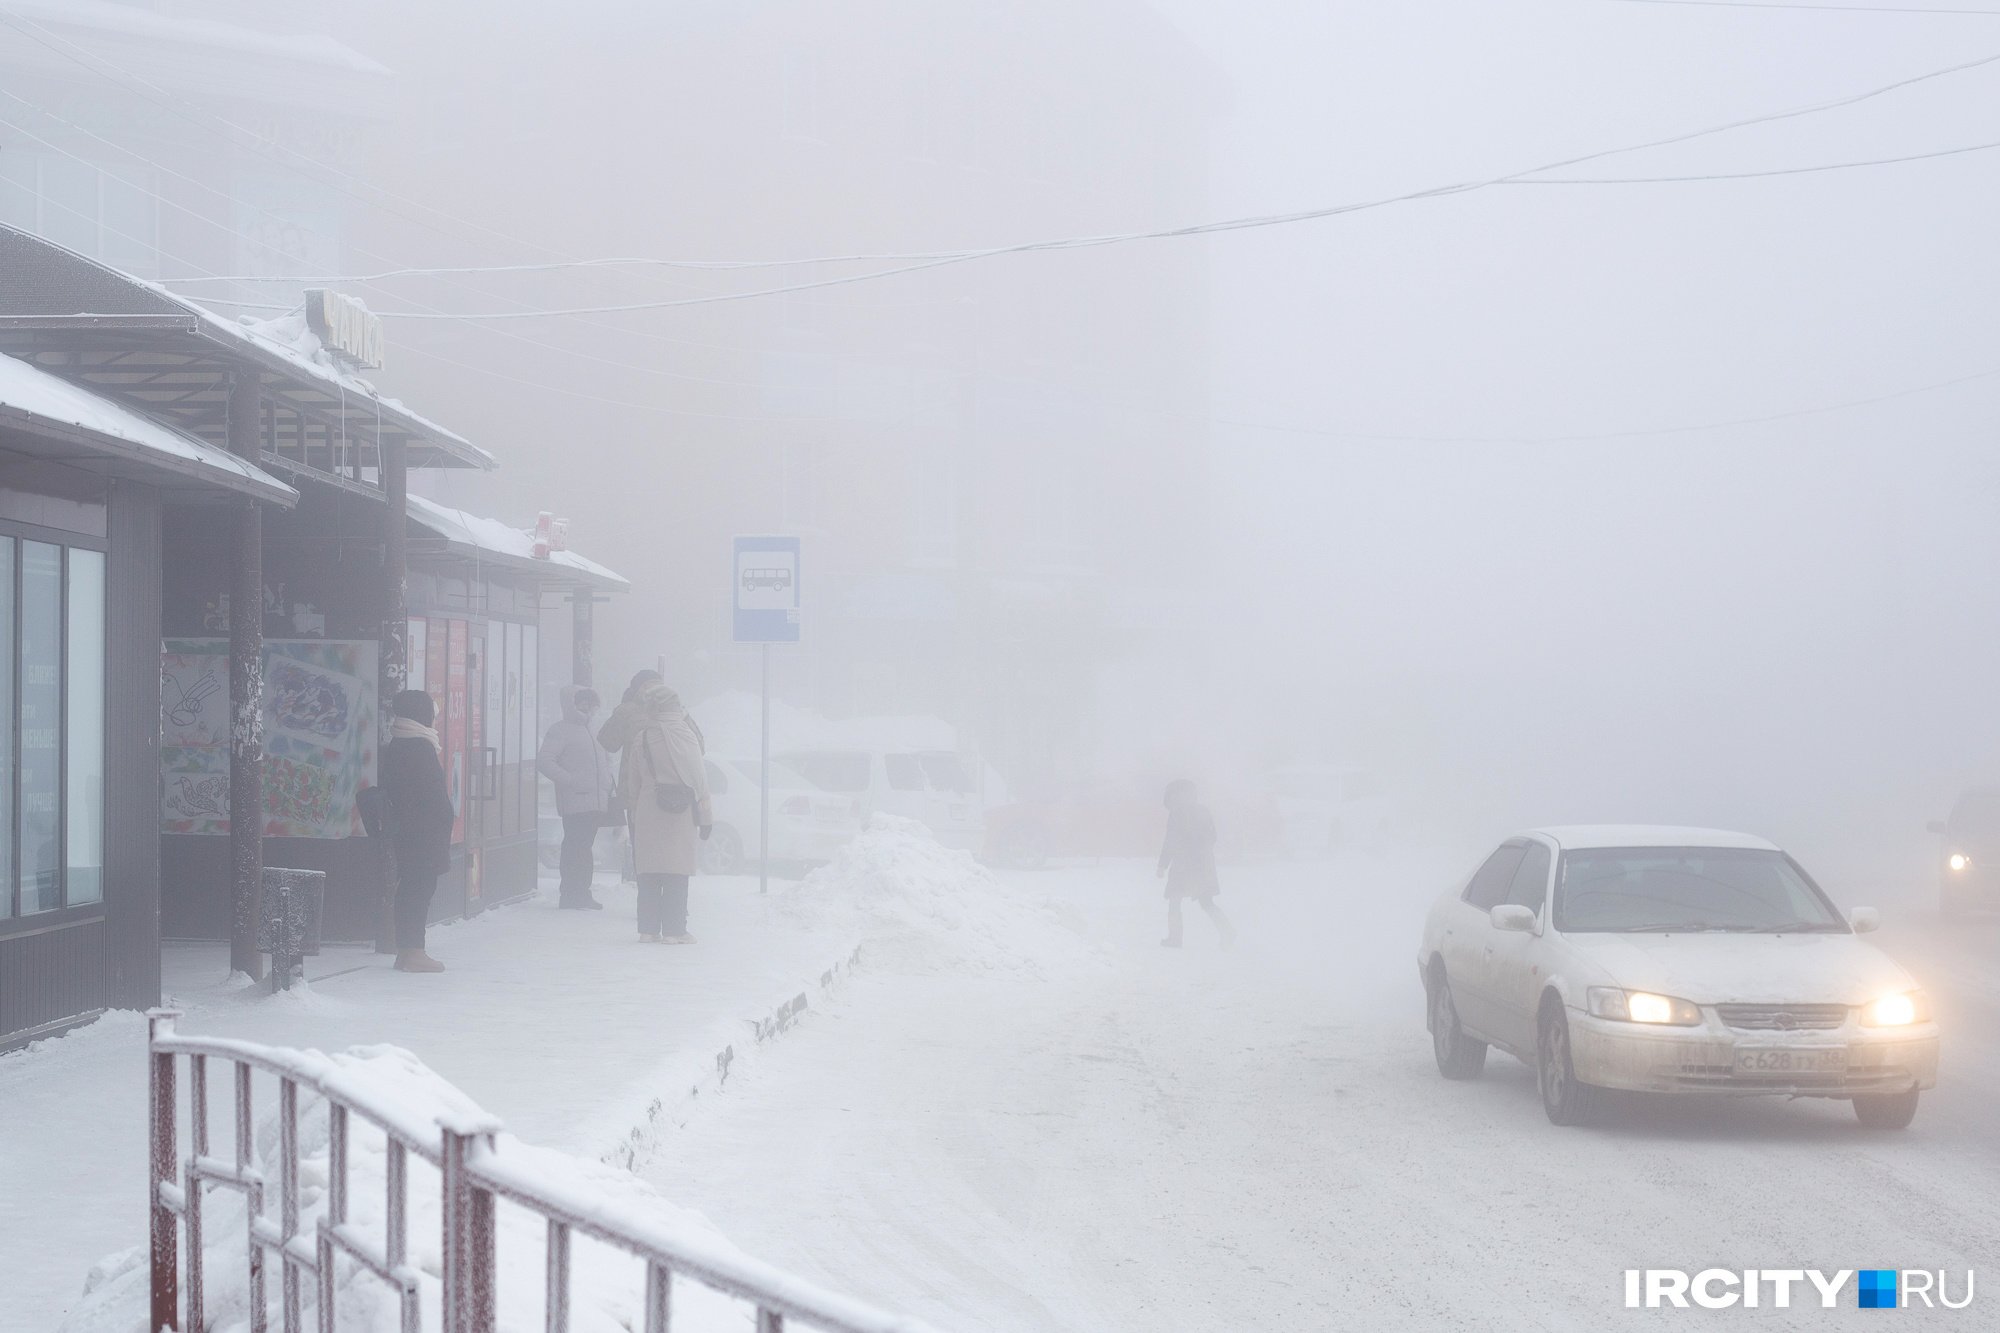 Вместе с морозом утром Иркутск накрыло плотным туманом